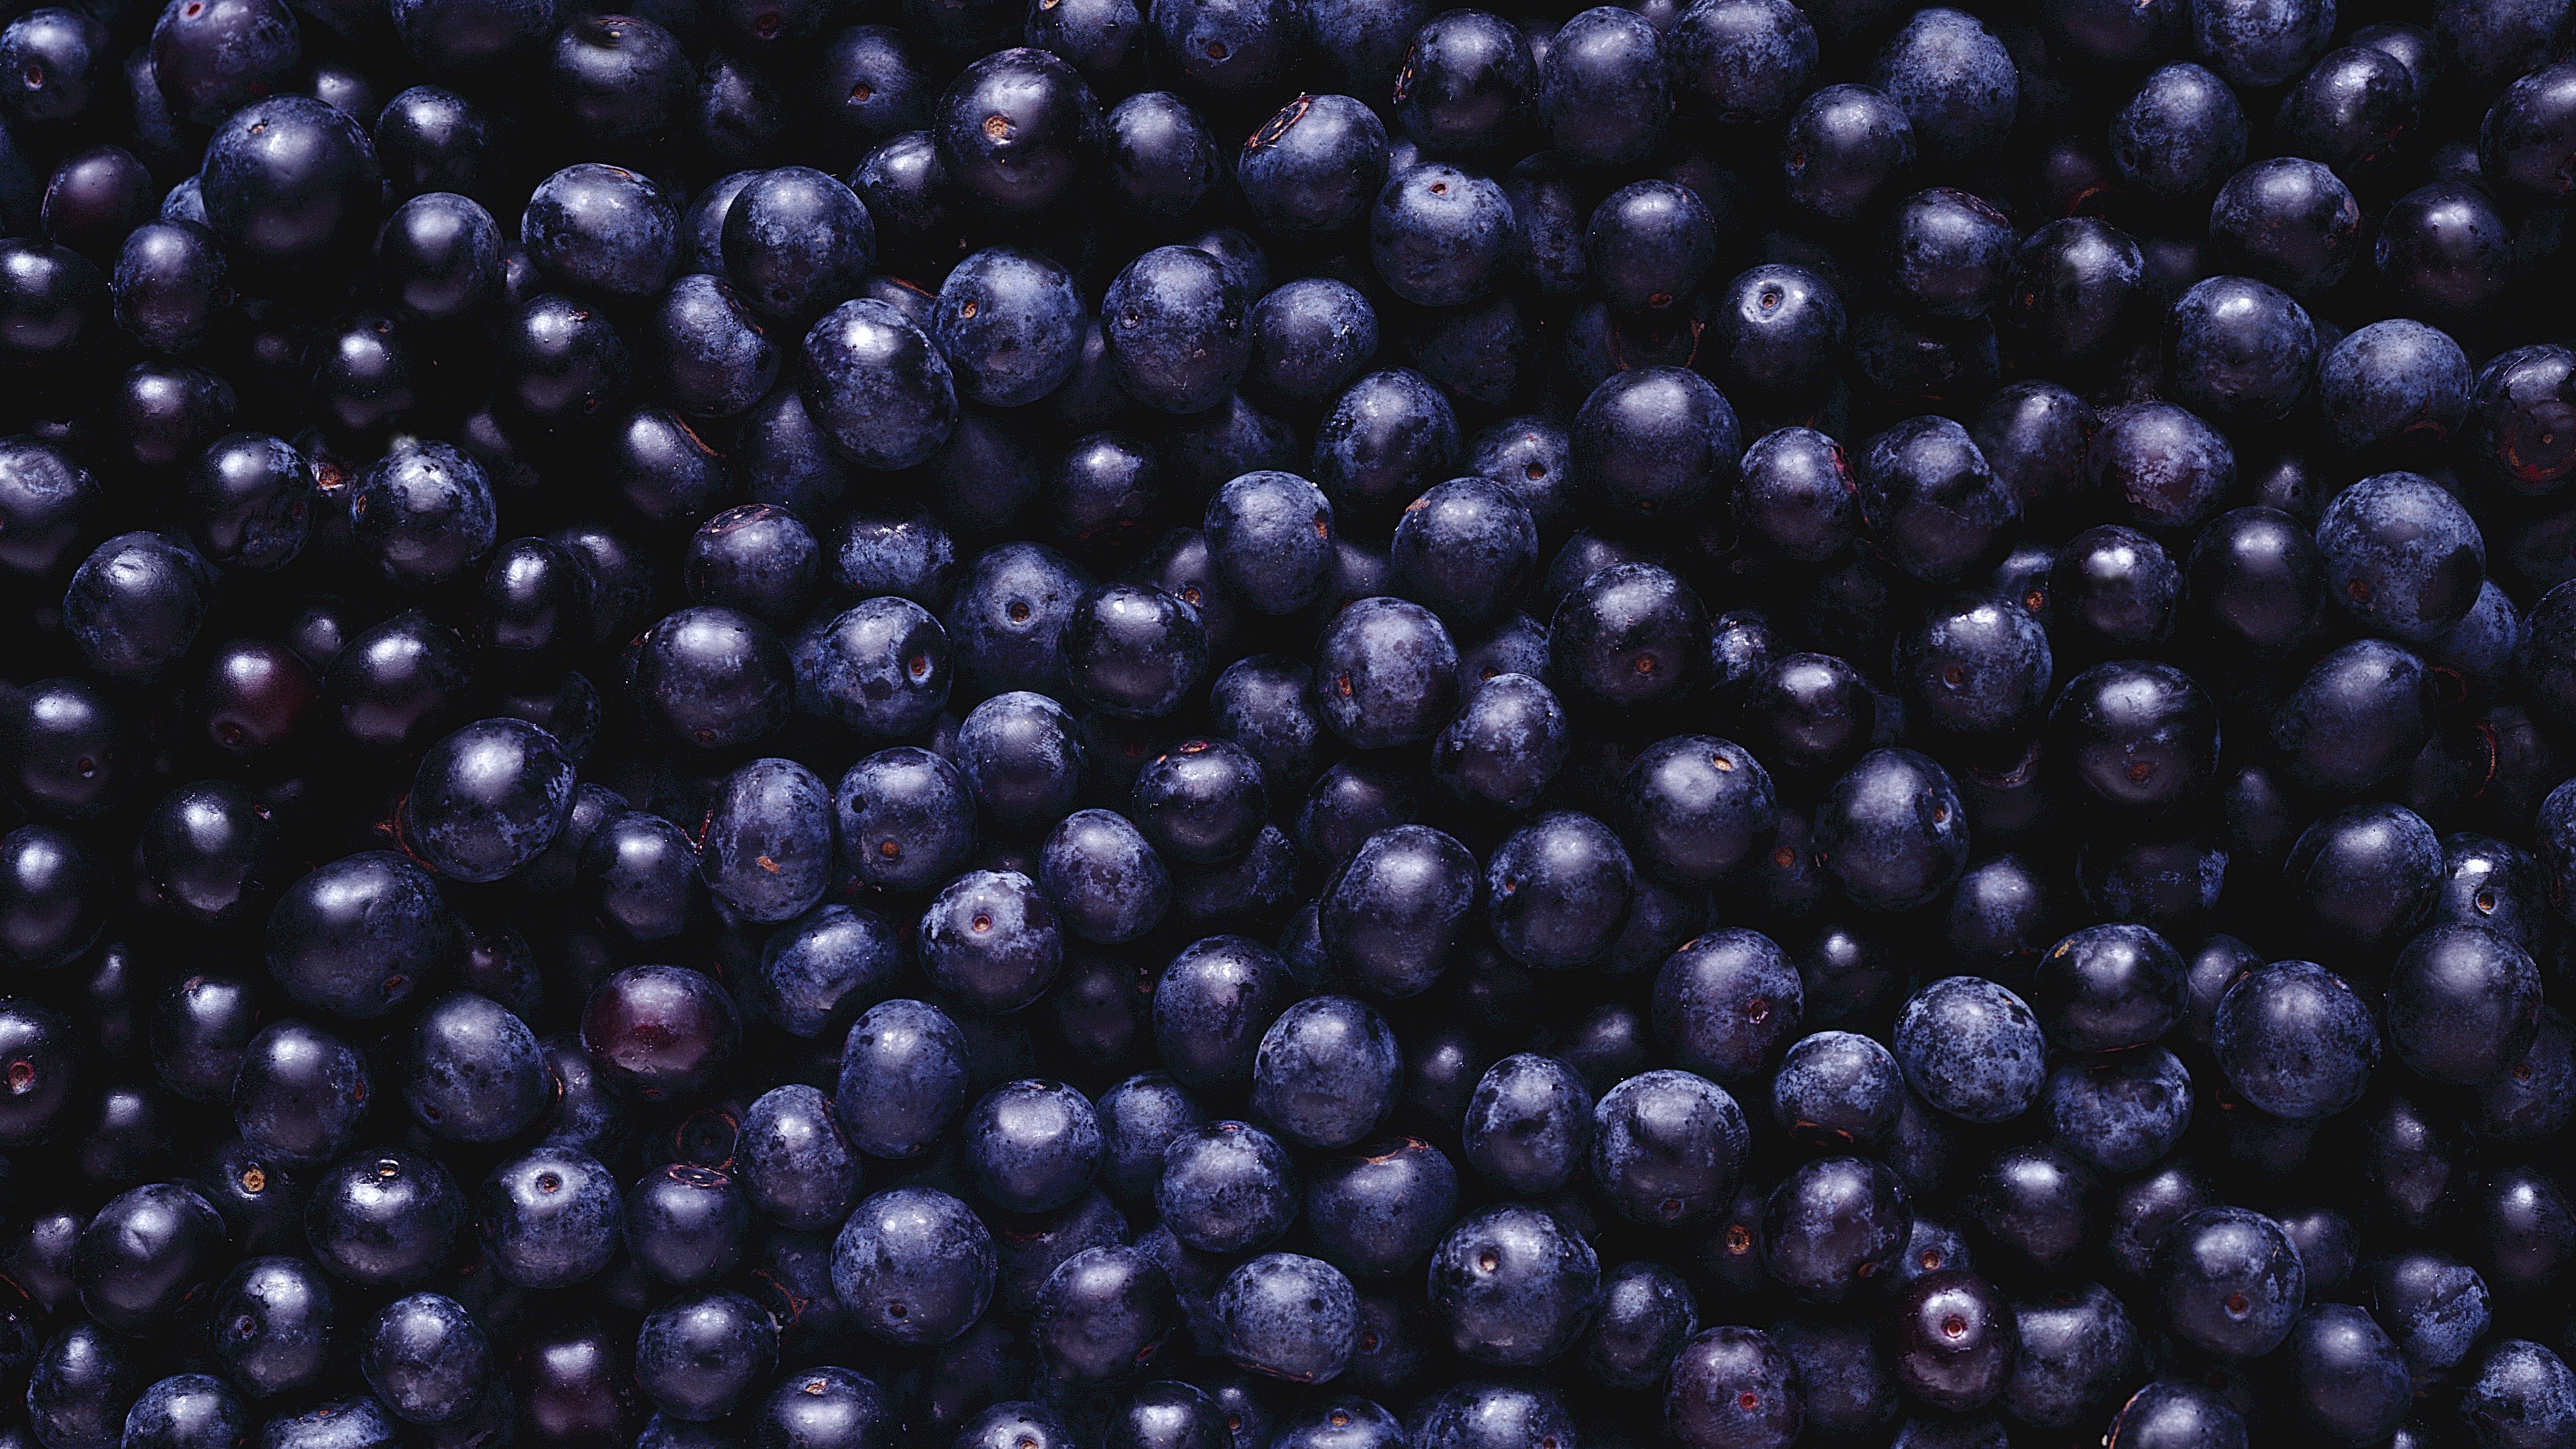 General 3616x2034 blueberries food berries purple blue macro top view